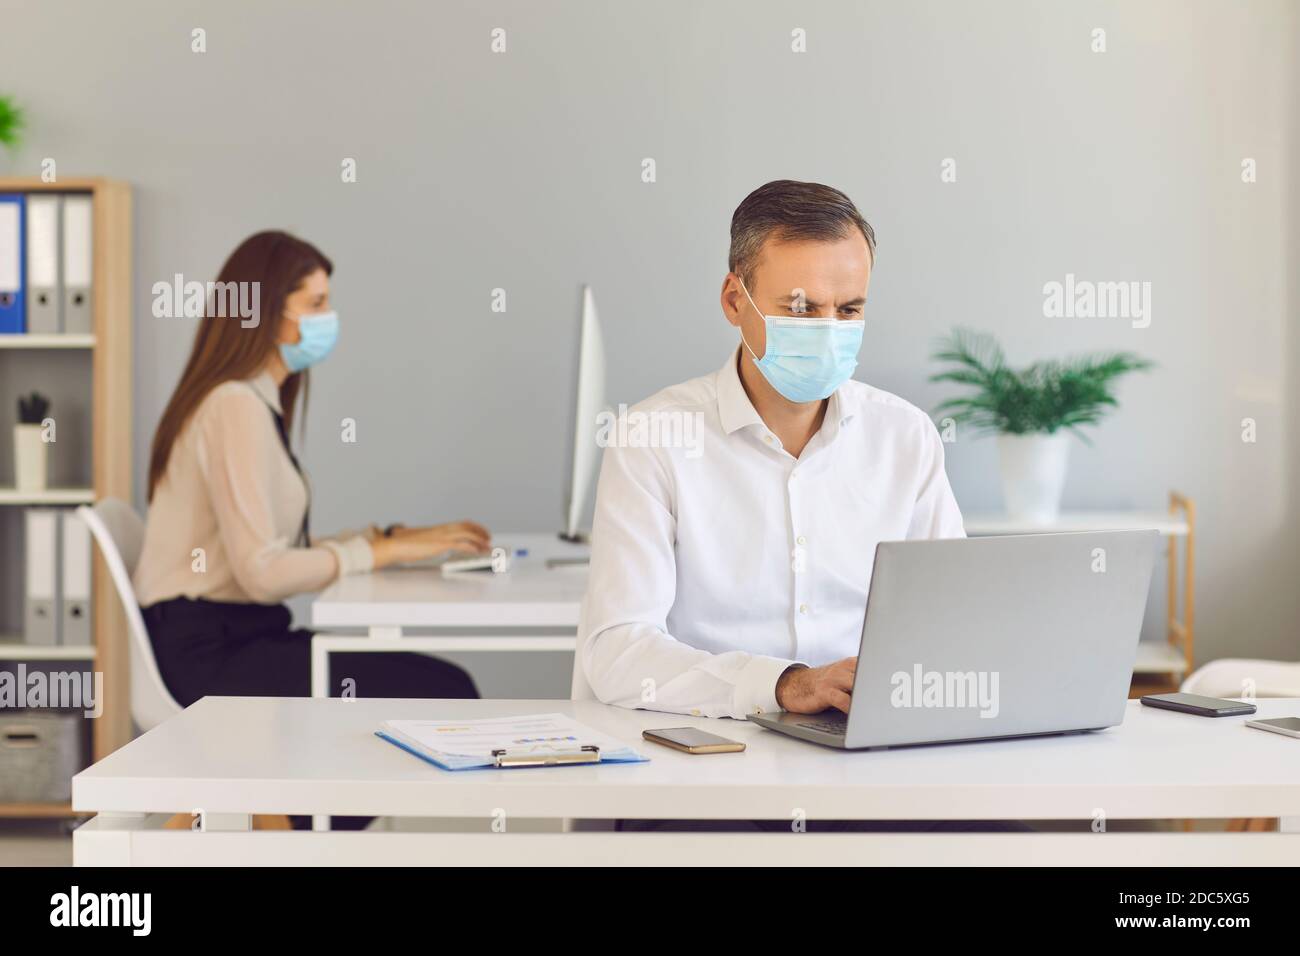 Bewusste Mitarbeiter tragen Masken, um ihre Kunden zu schützen und die Ausbreitung von COVID-19 zu verhindern. Stockfoto